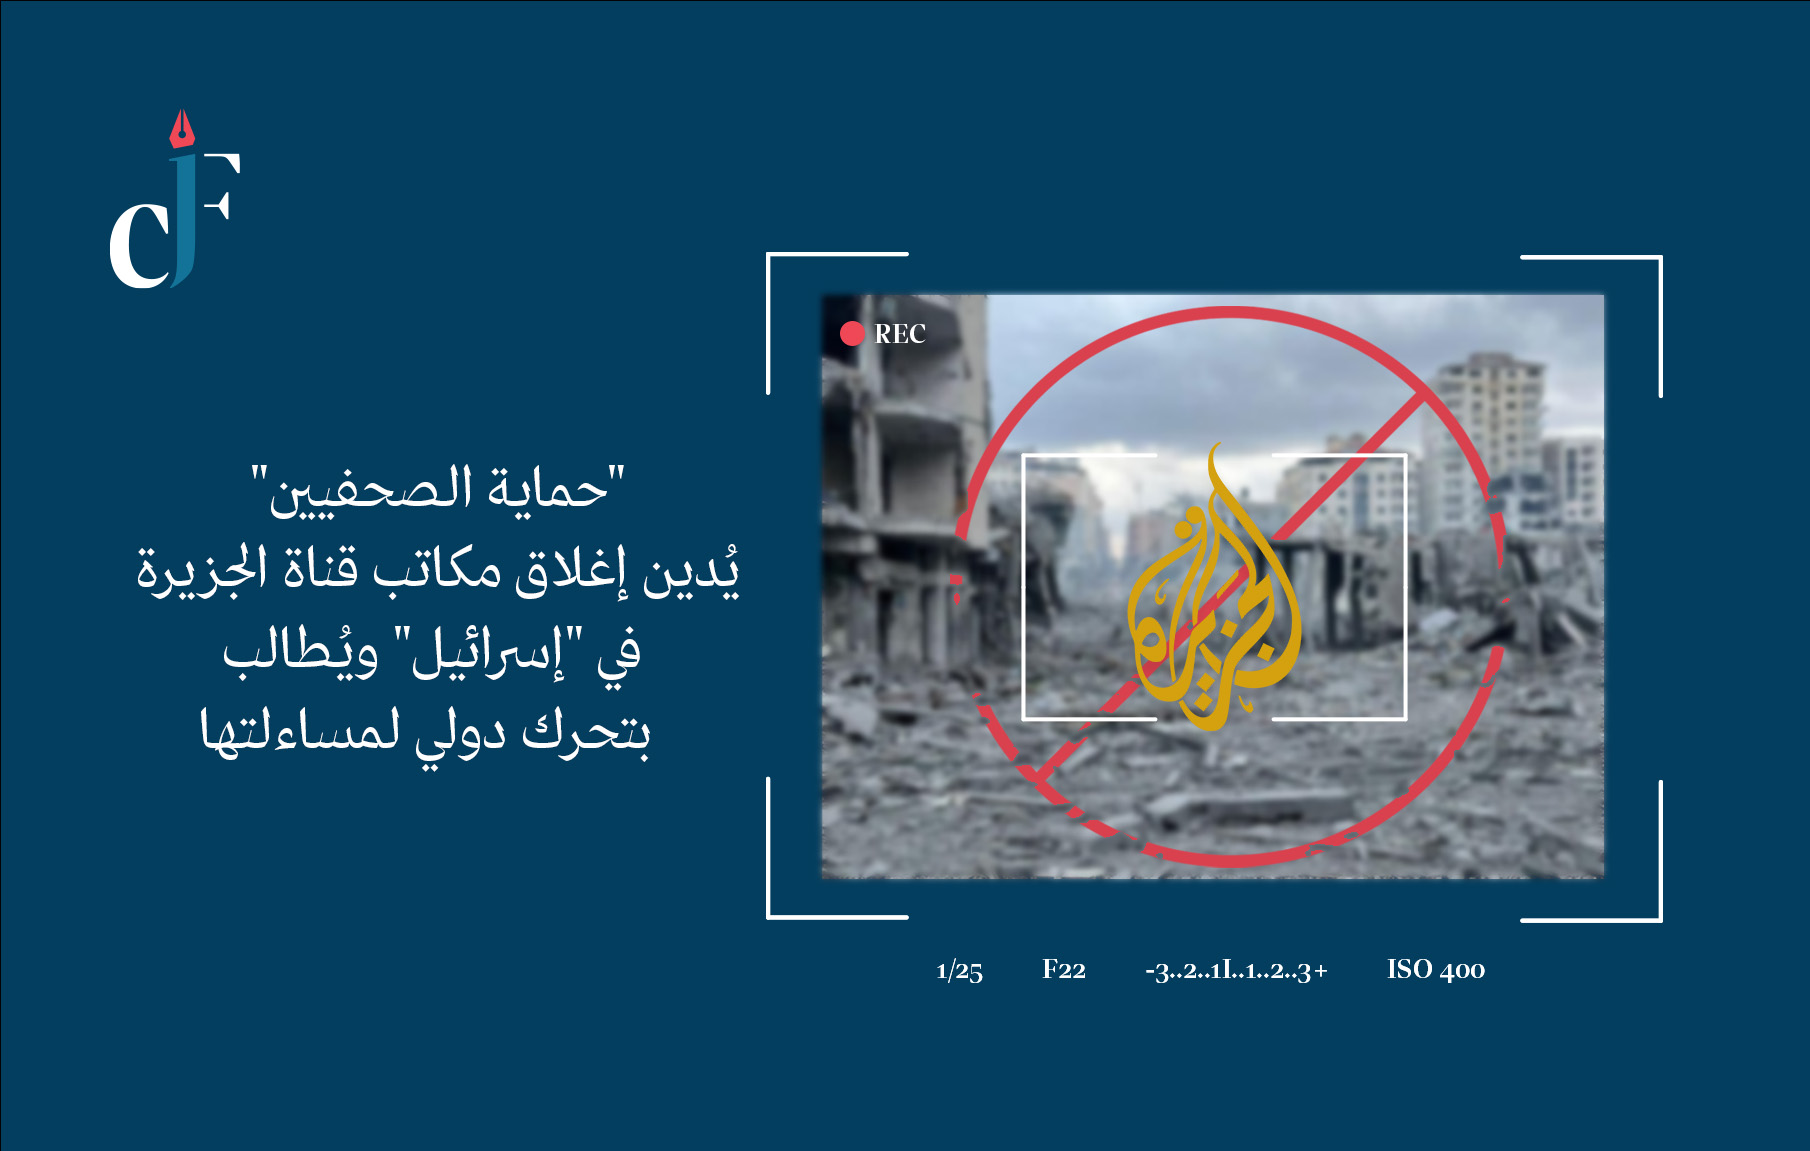 “حماية الصحفيين” يُدين إغلاق مكاتب قناة الجزيرة في “إسرائيل” ويُطالب بتحرك دولي لمساءلتها